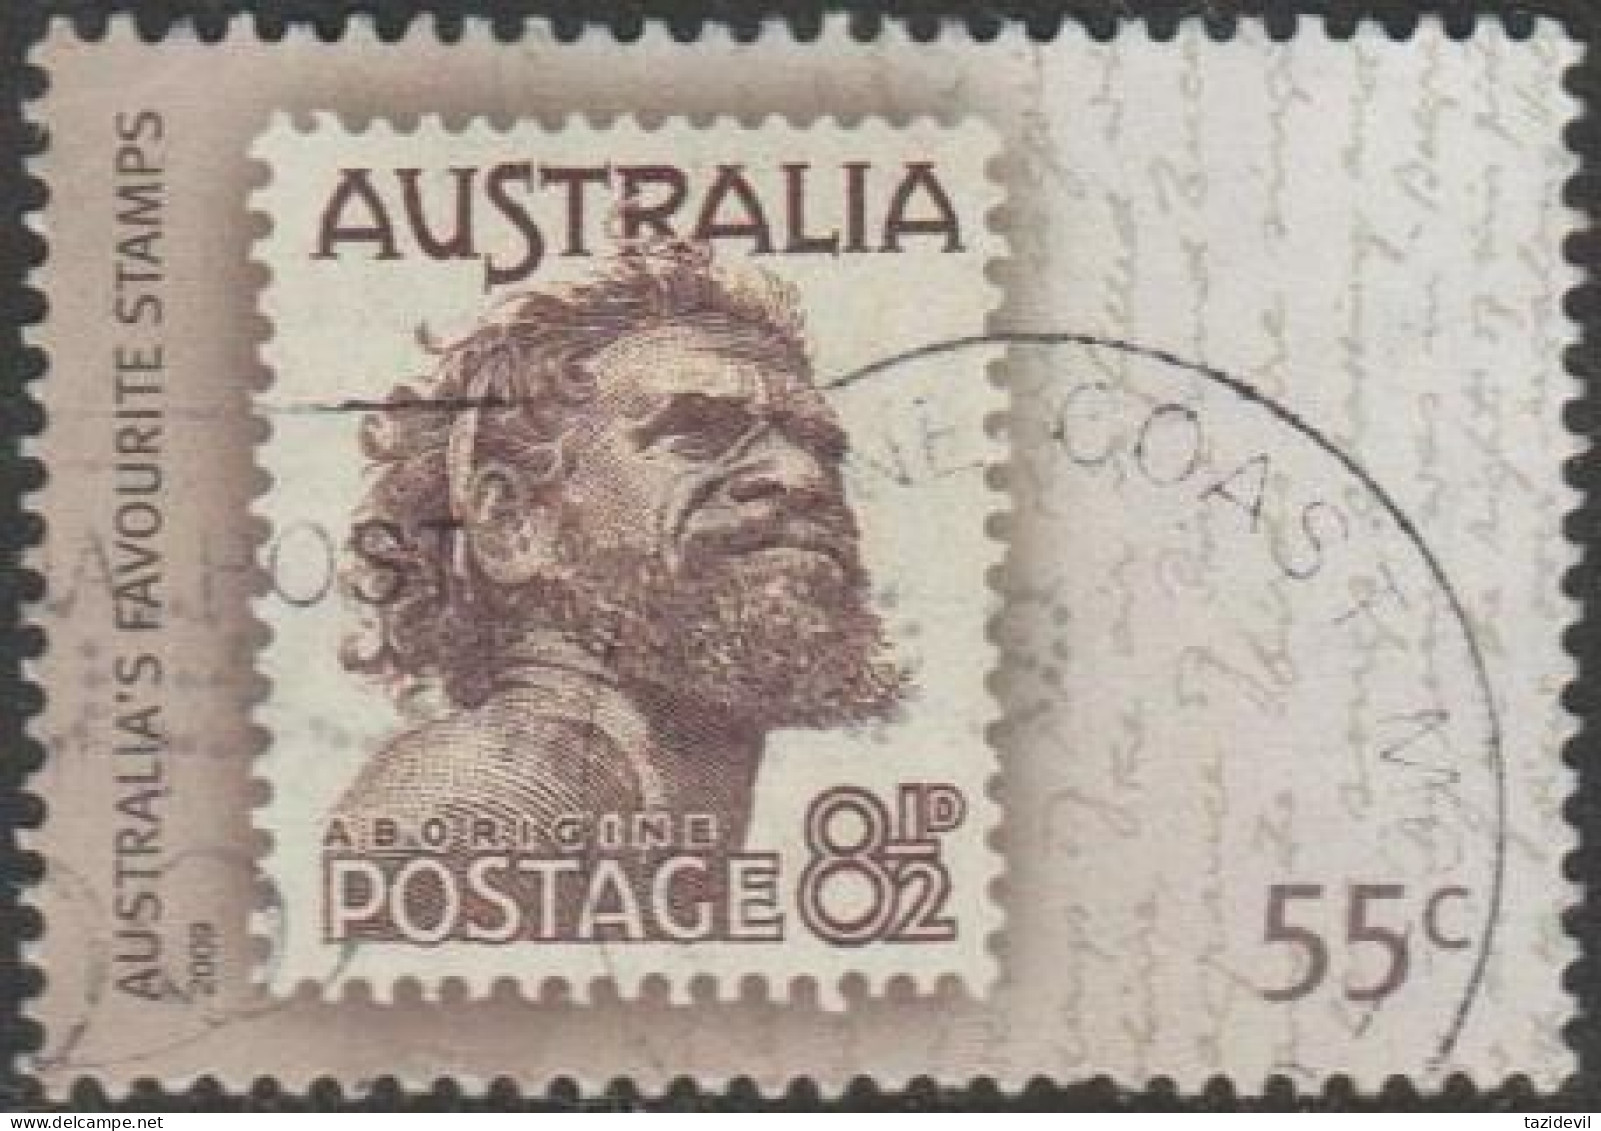 AUSTRALIA - USED - 2009 55c Australia's Favourite Stamps - 8½d Aboriginal - Oblitérés